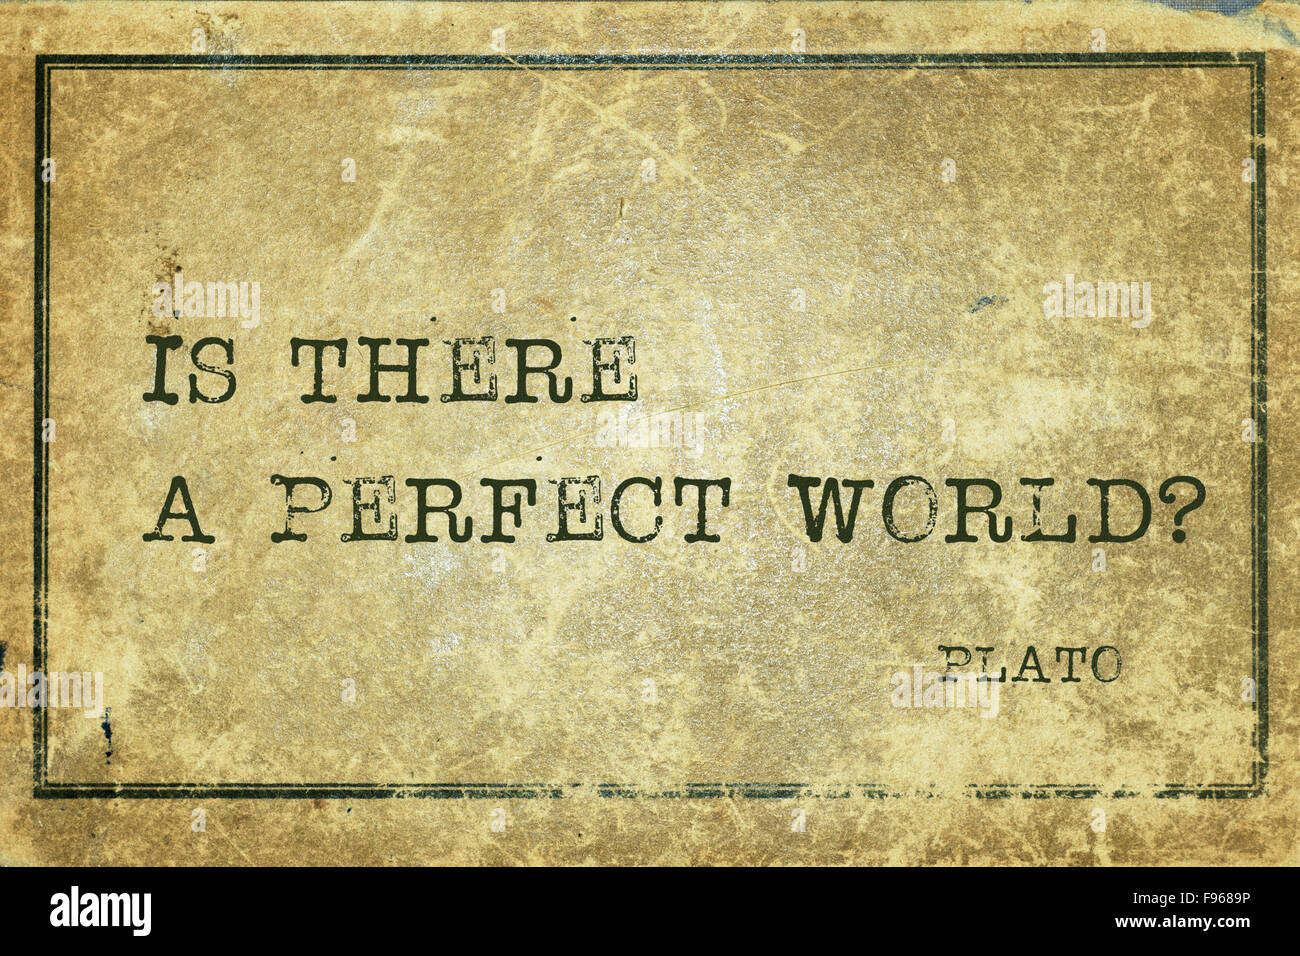 Vi è un mondo perfetto?- antico filosofo greco Platone preventivo stampato su grunge cartone vintage Foto Stock